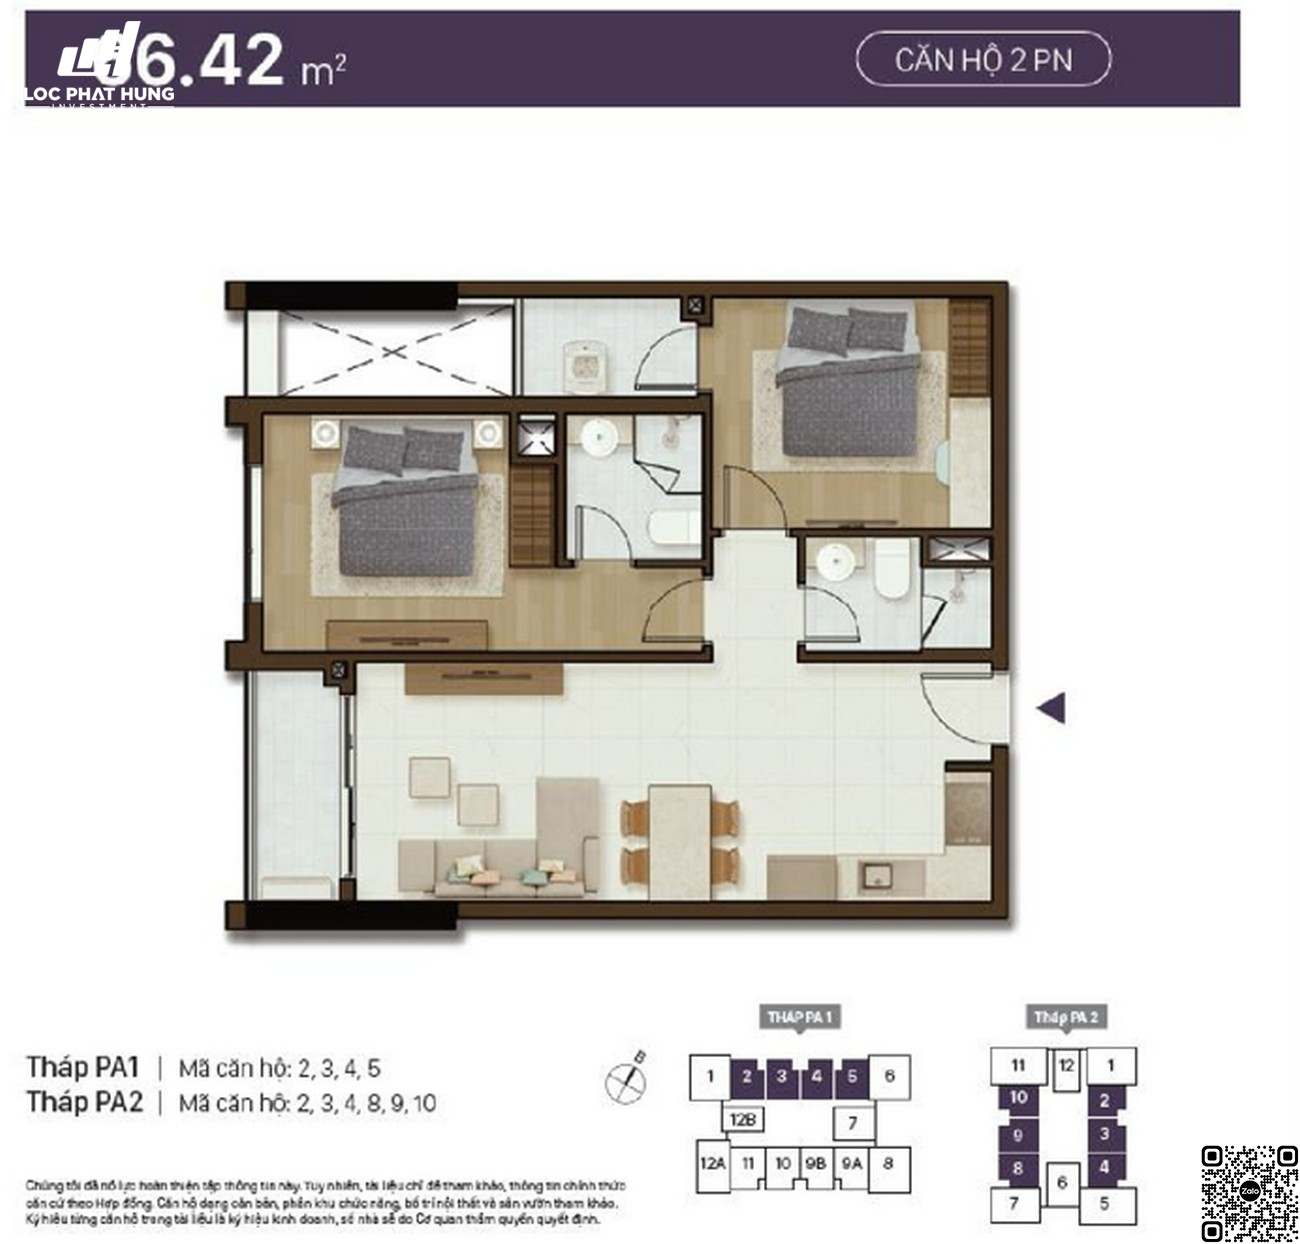 Thiết kế chi tiết căn hộ 2 phòng ngủ diện tích 66,42m²